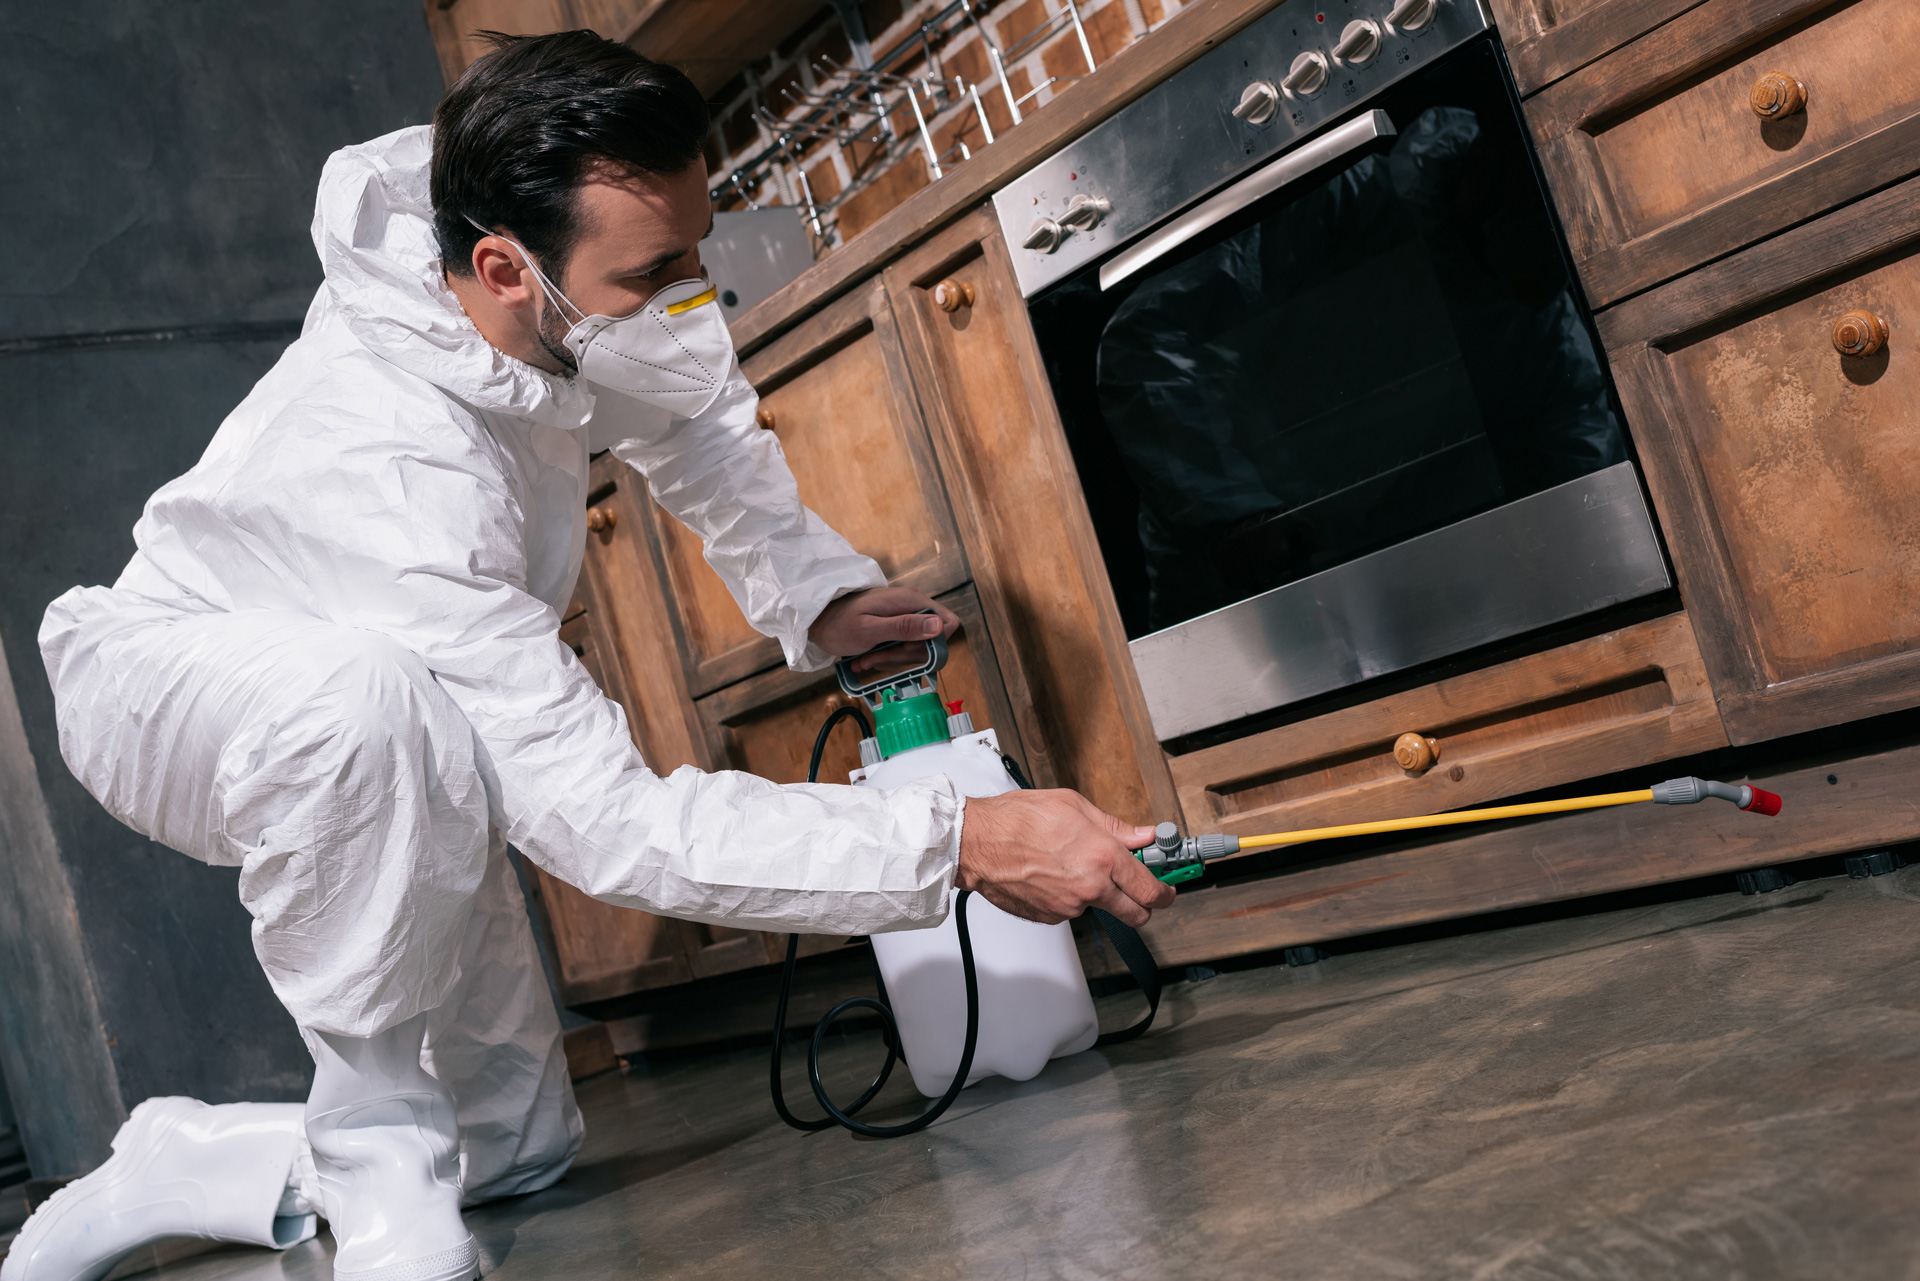 pest control worker spraying pesticides under cabinet in kitchen